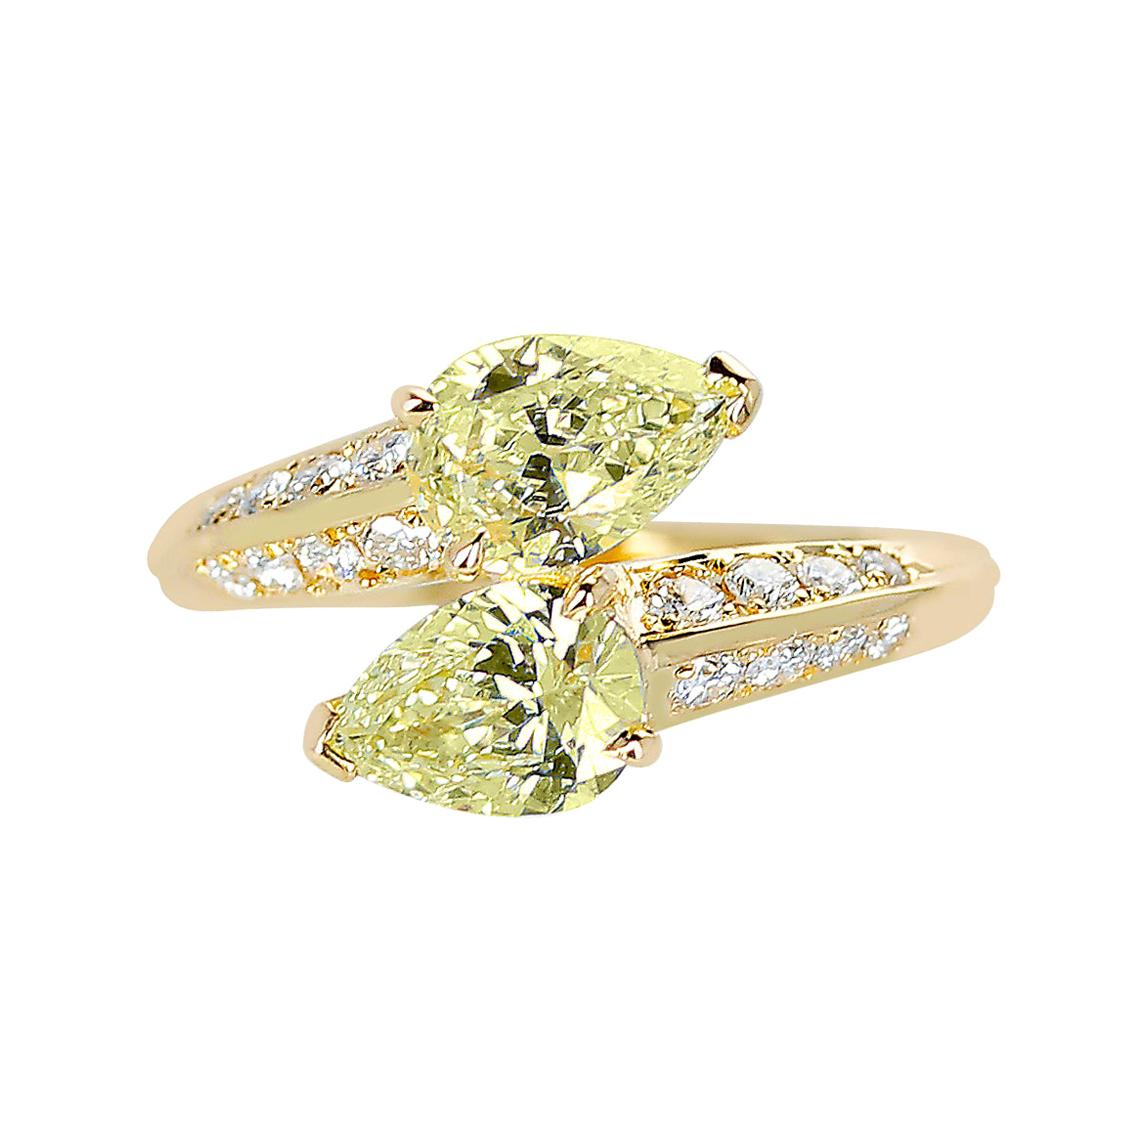 Bague Toi Et Moi à double diamant jaune en forme de poire avec diamants ronds blancs, 18 carats